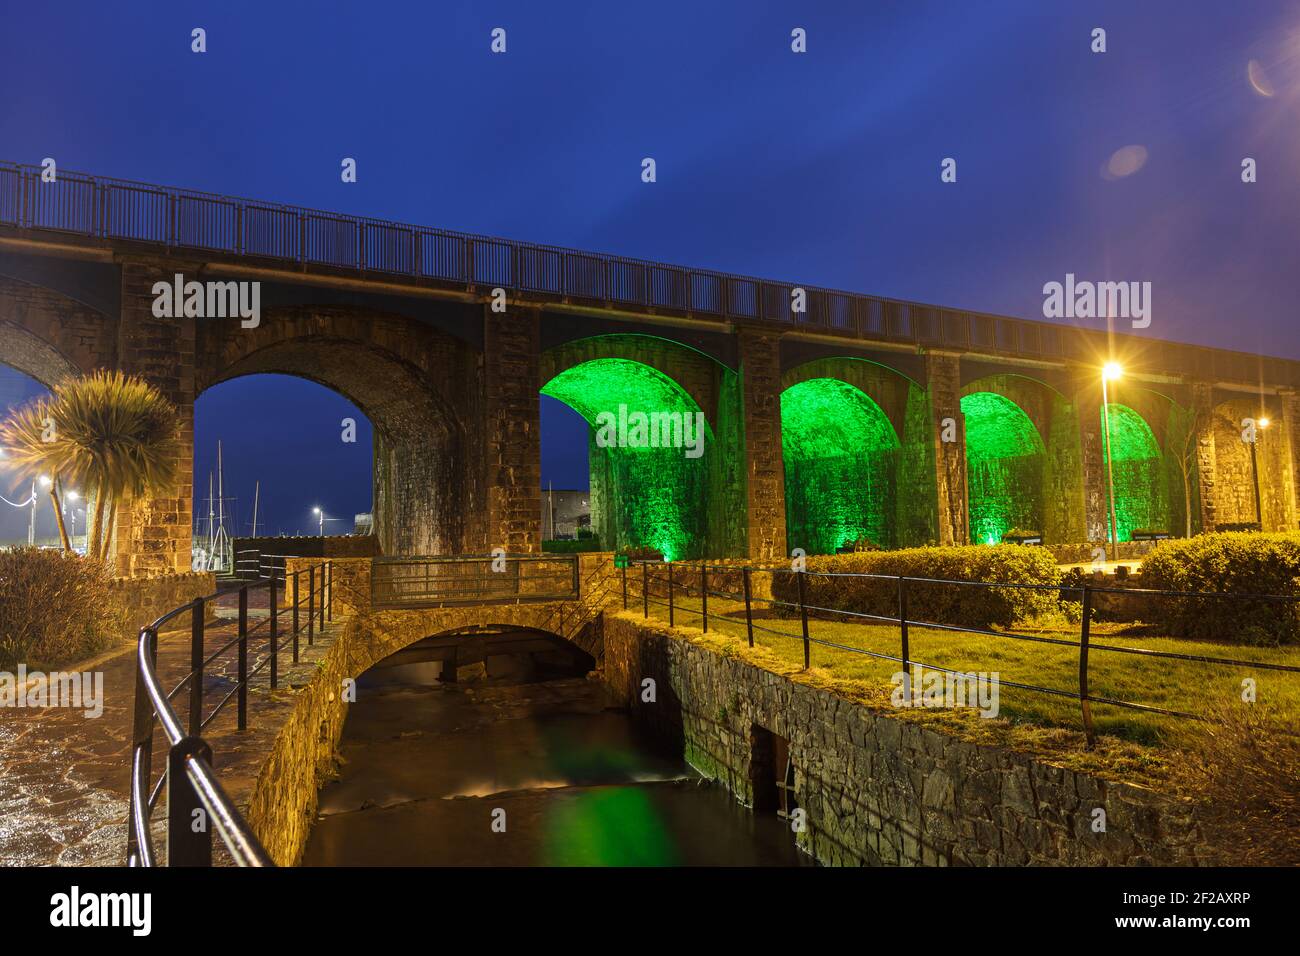 Pont ferroviaire, pont Arche illuminé en vert, verdissement global pour la Saint-Patrick, le 17 mars, fête de Paddys Banque D'Images